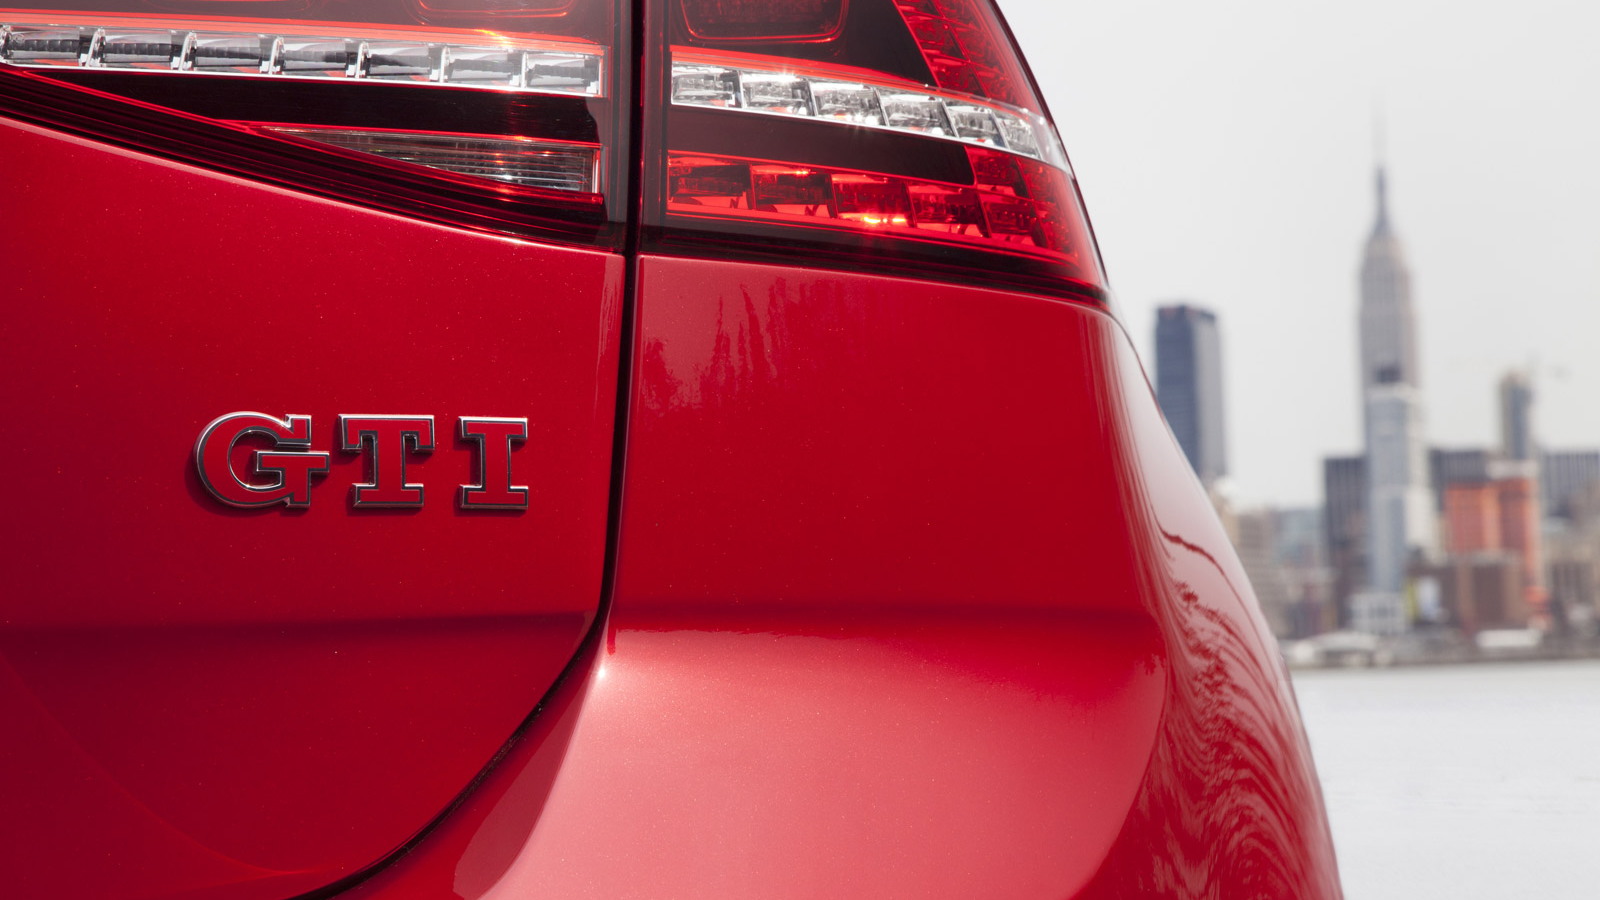 2015 Volkswagen GTI - image: Volkswagen of America